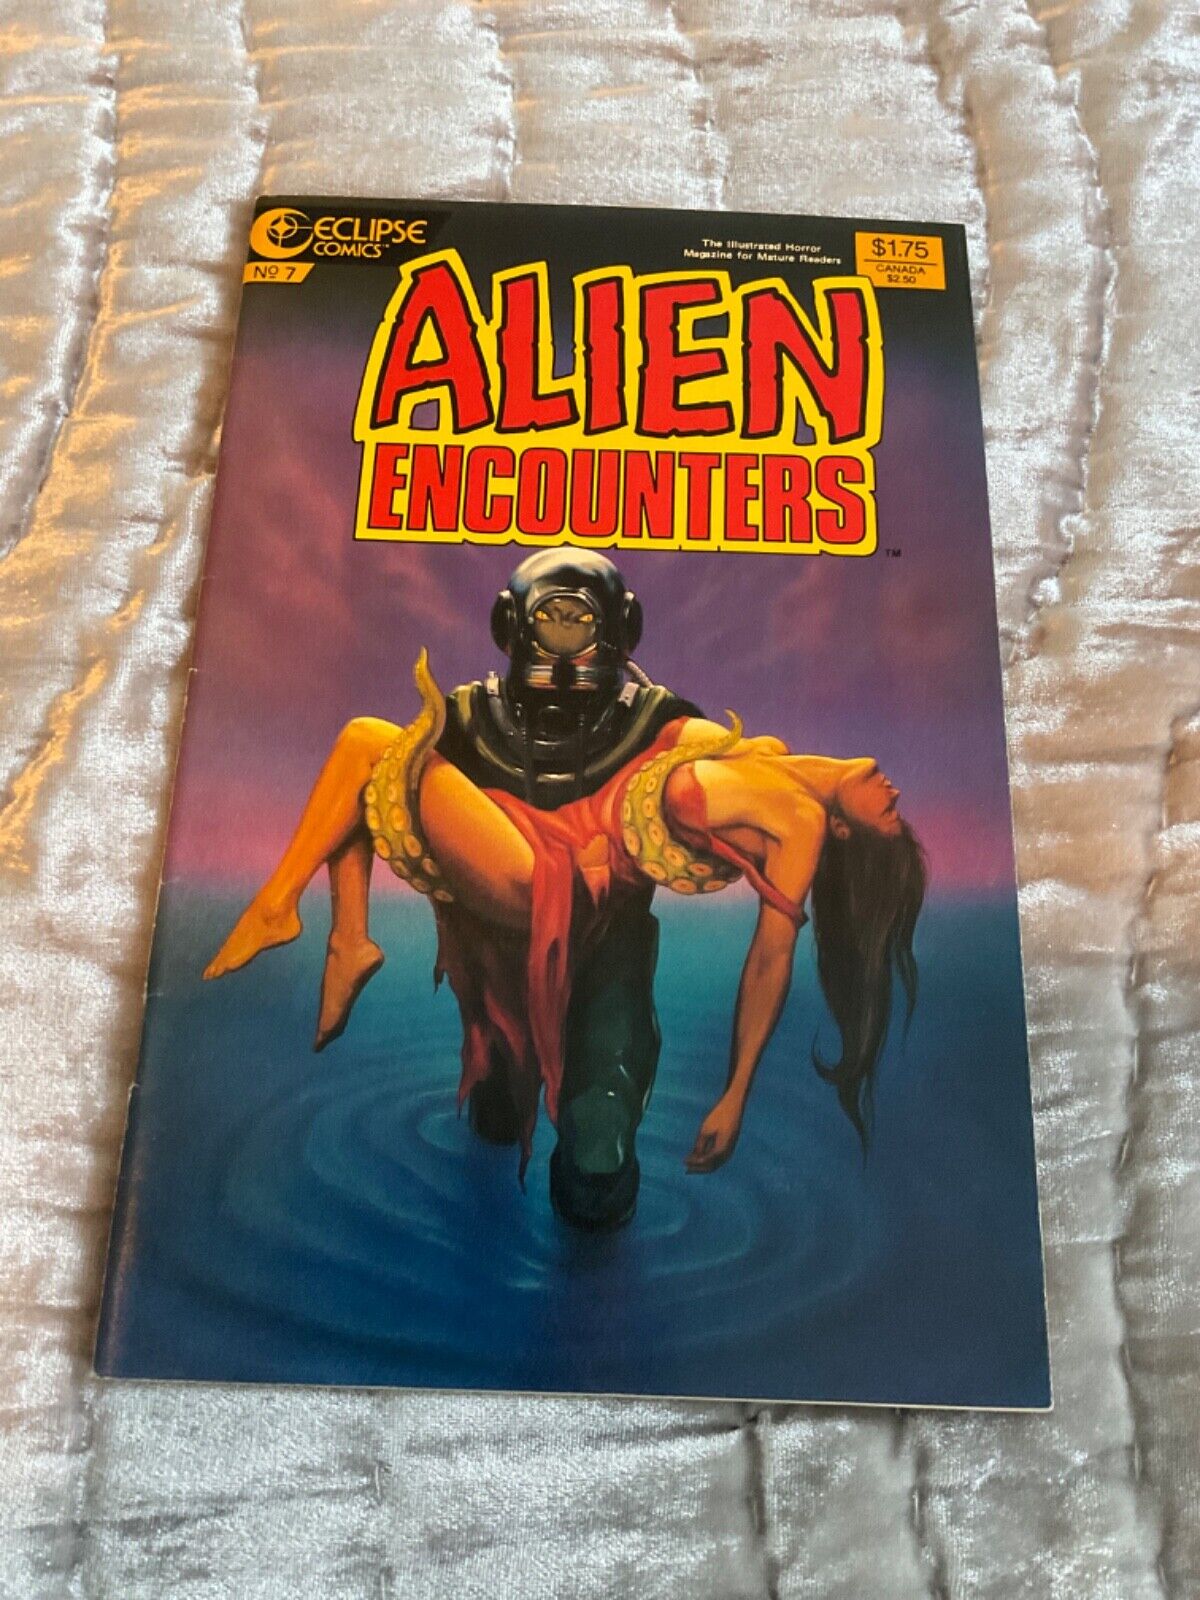 Alien Encounters #7 Eclipse Comics Tentacle Bondage Cover